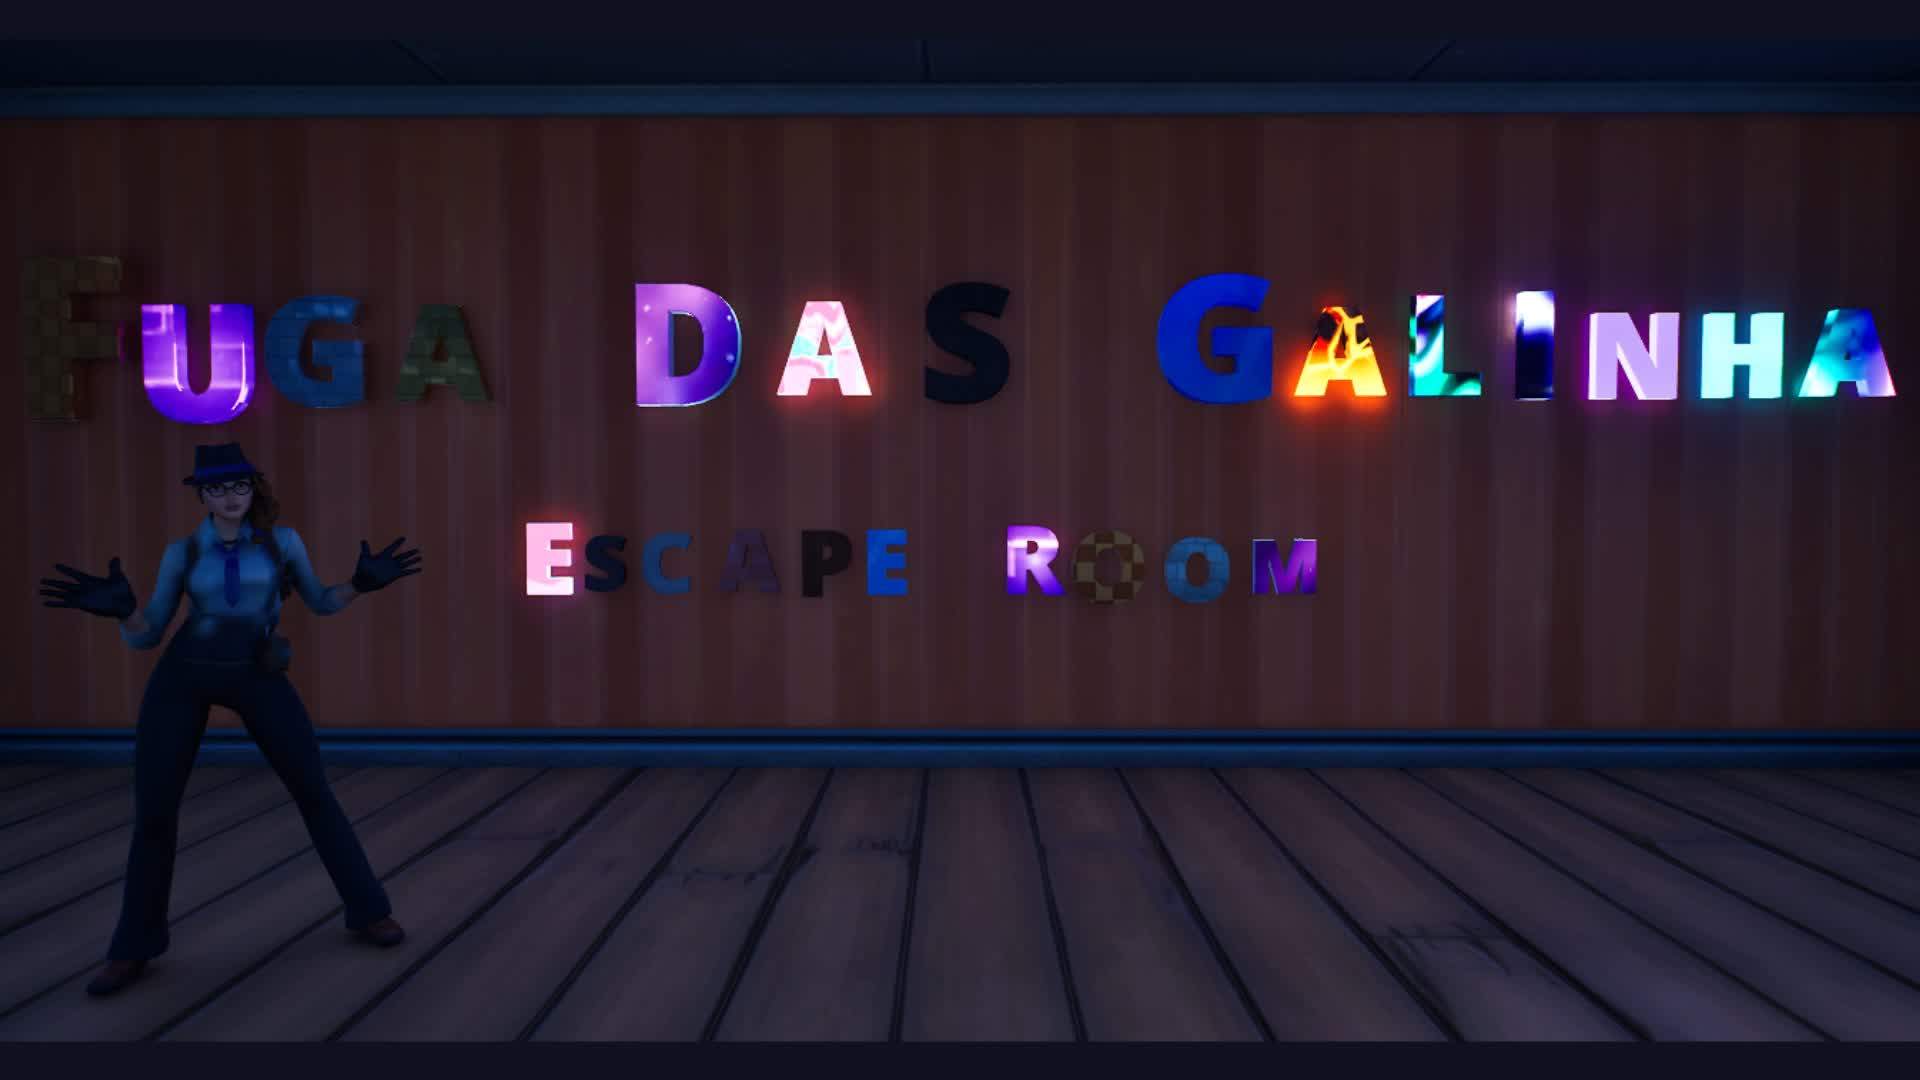 Fuga das Galinha - Escape Room